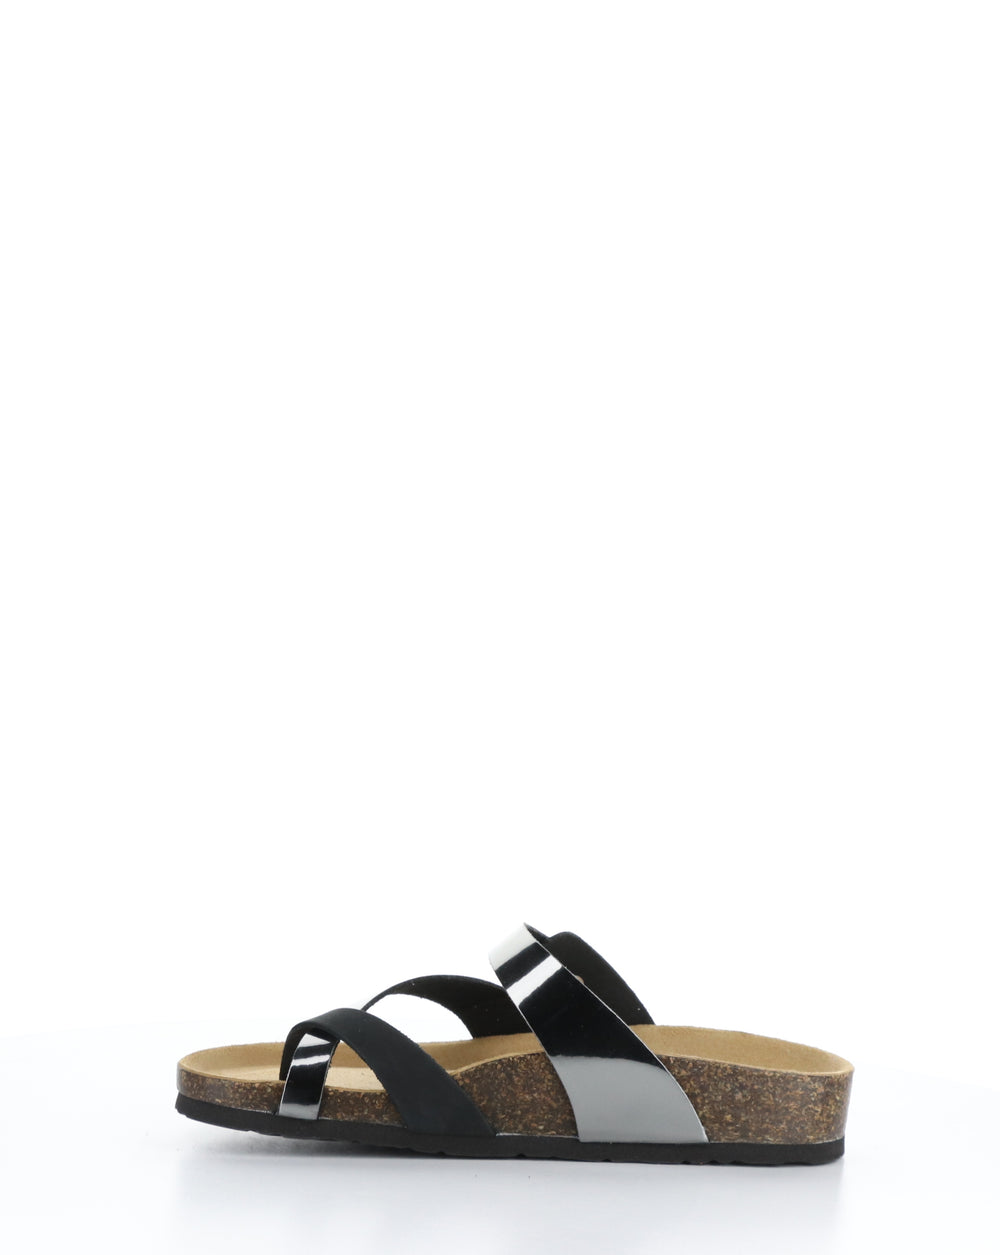 PARR BLACK/PEWTER Slip-on Sandals